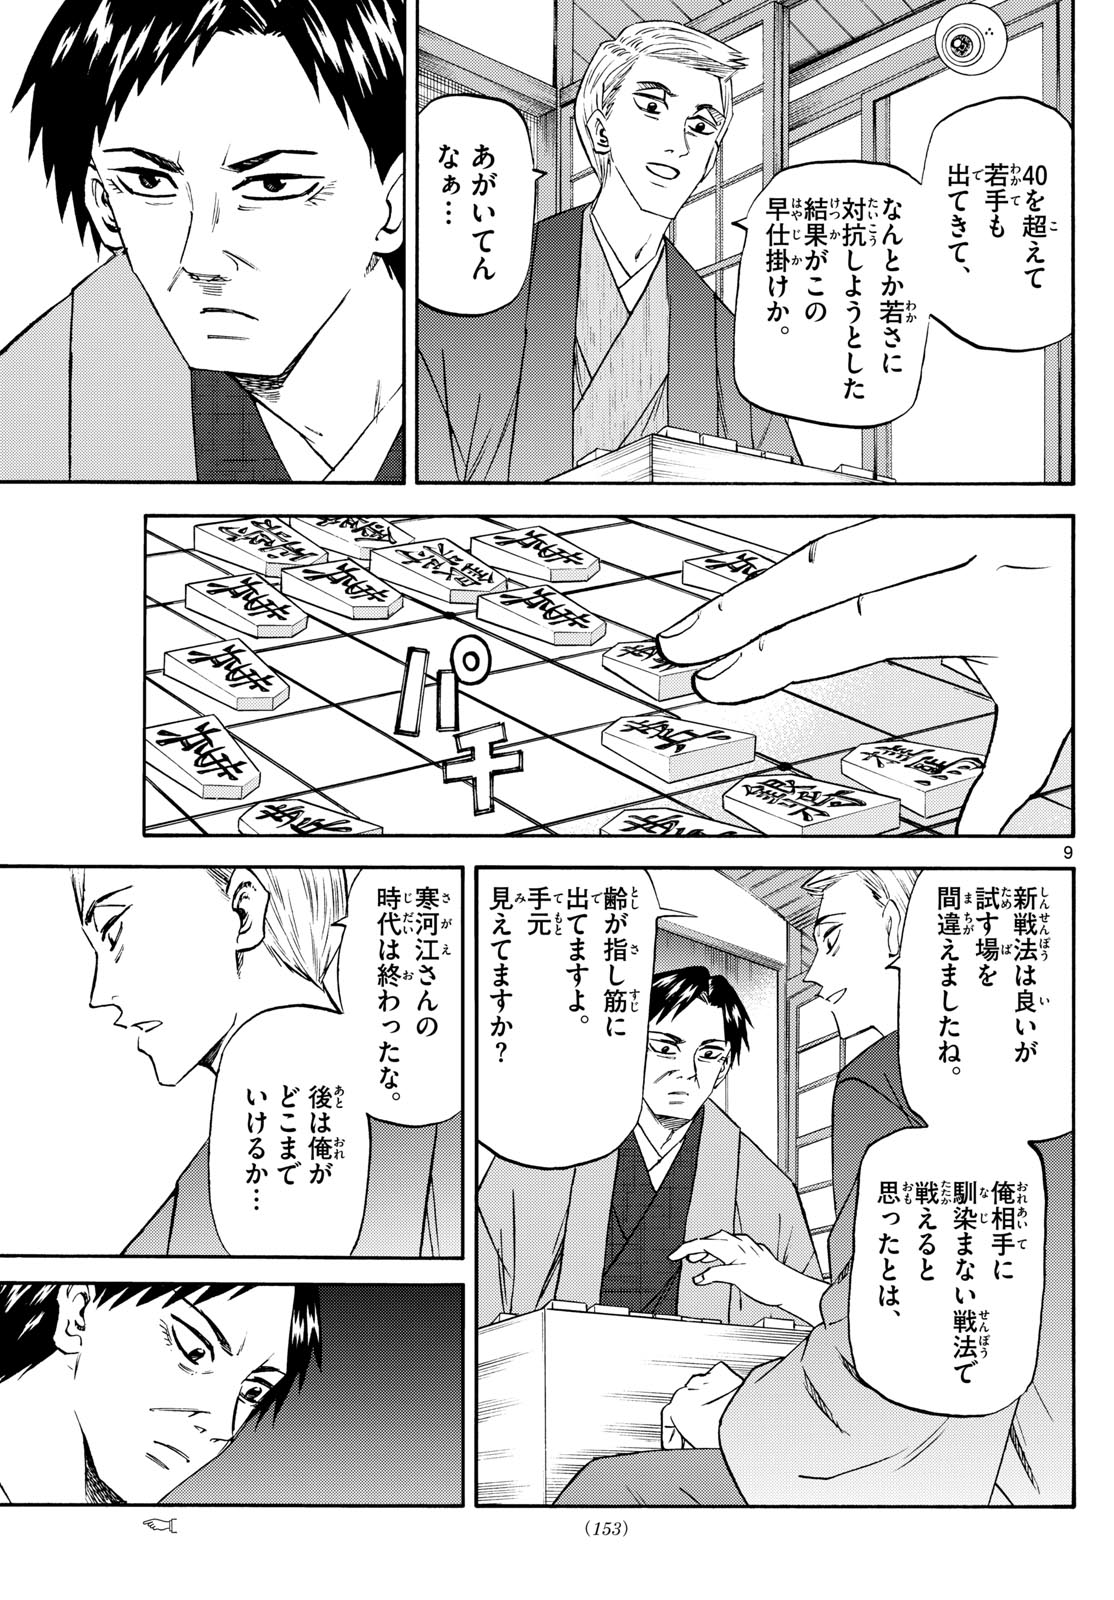 Tatsu to Ichigo - Chapter 195 - Page 9